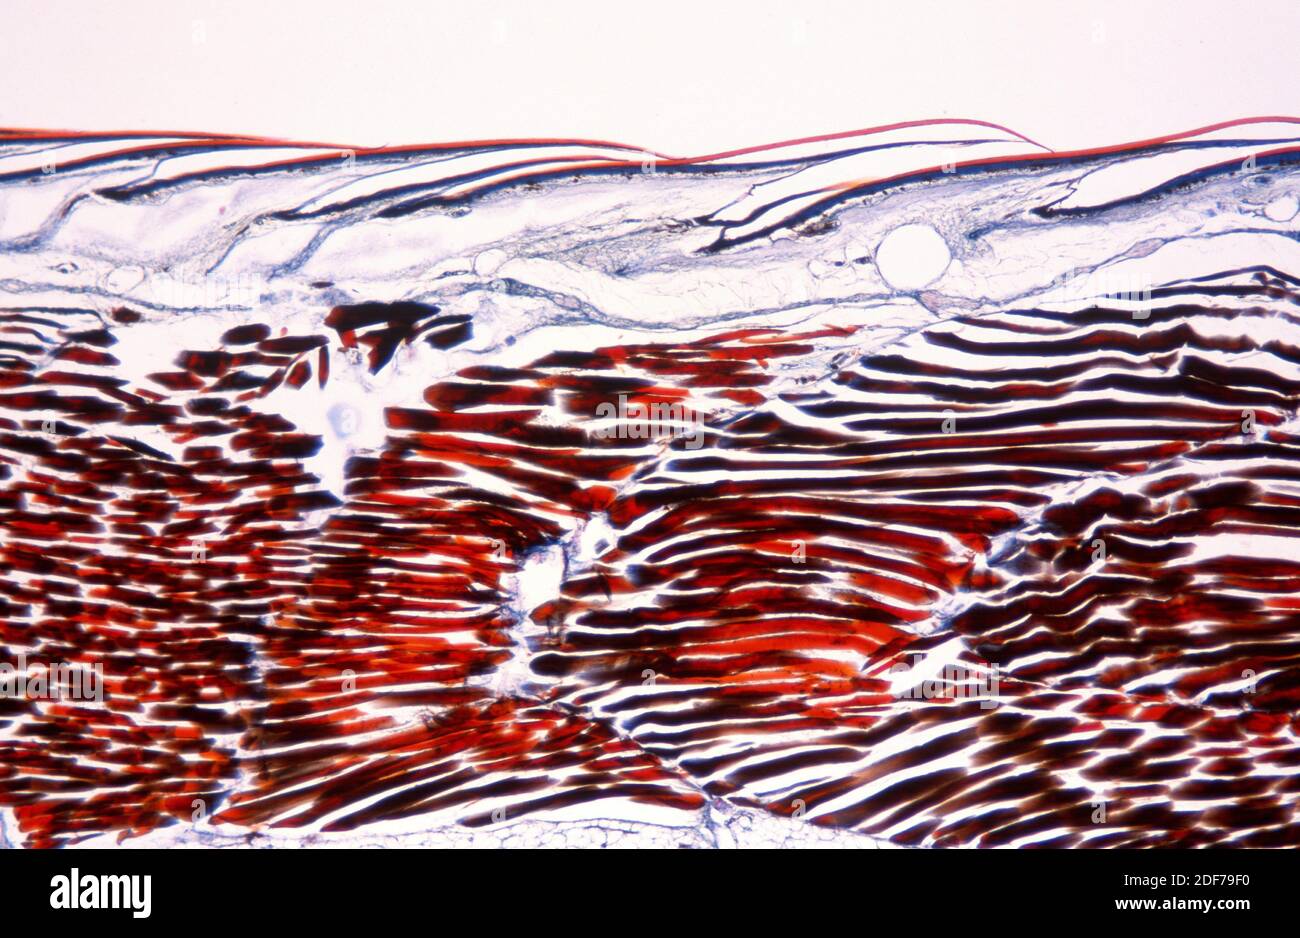 Sección longitudinal del lagarto (Lacerta sp.) mostrando escamas, epidermis y músculo esquelético. Fotomicrografía. Foto de stock